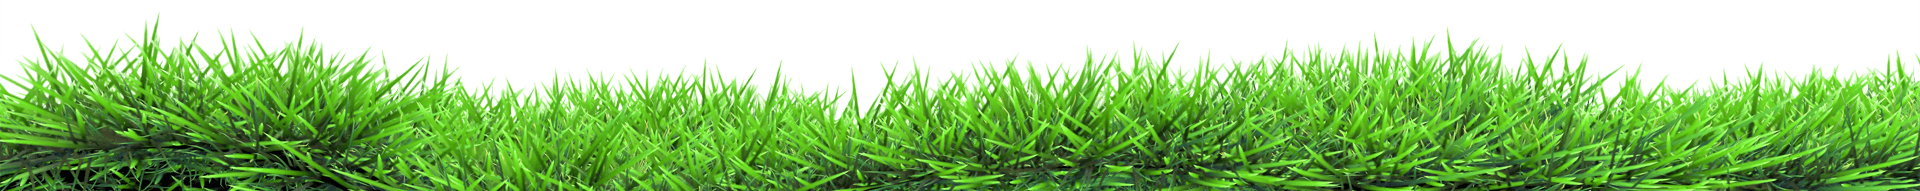 Grass Land